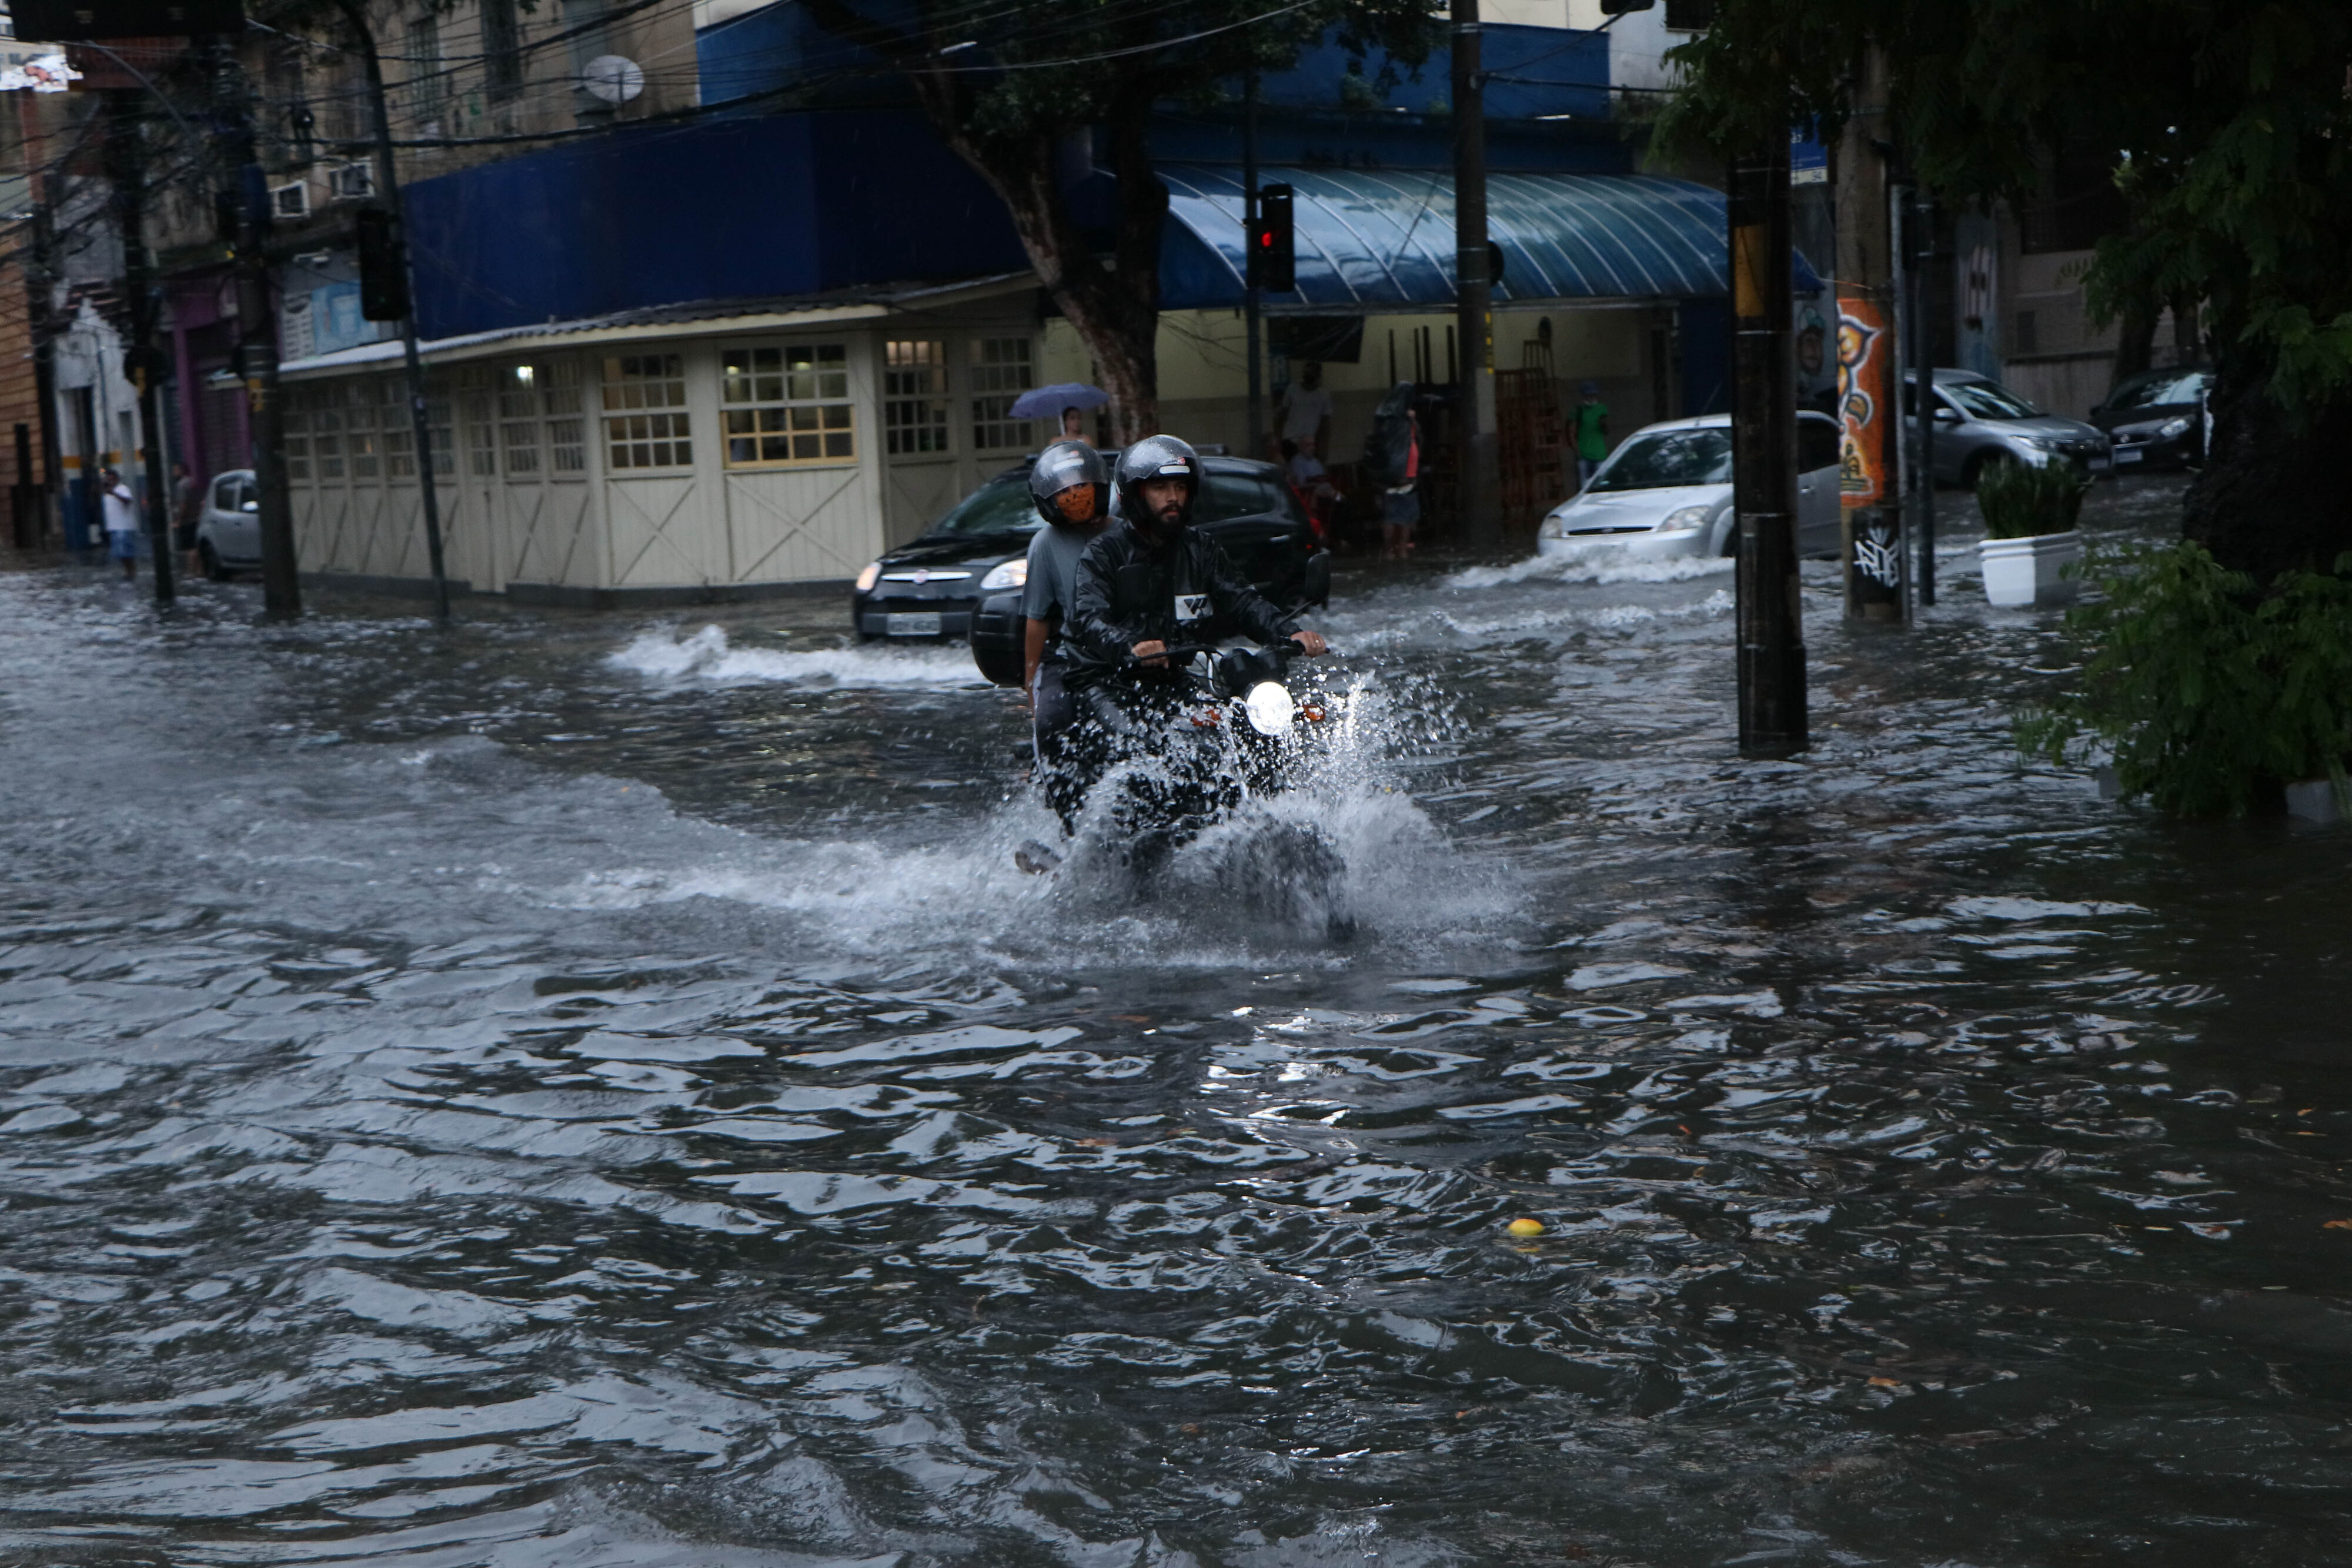  ريو دي جانيرو: رجلان يركبان دراجة نارية عبر شارع غمرته المياه في أعقاب الأمطار الغزيرة التي ضربت مدينة في ديسمبر 2021م ( د ب ا)